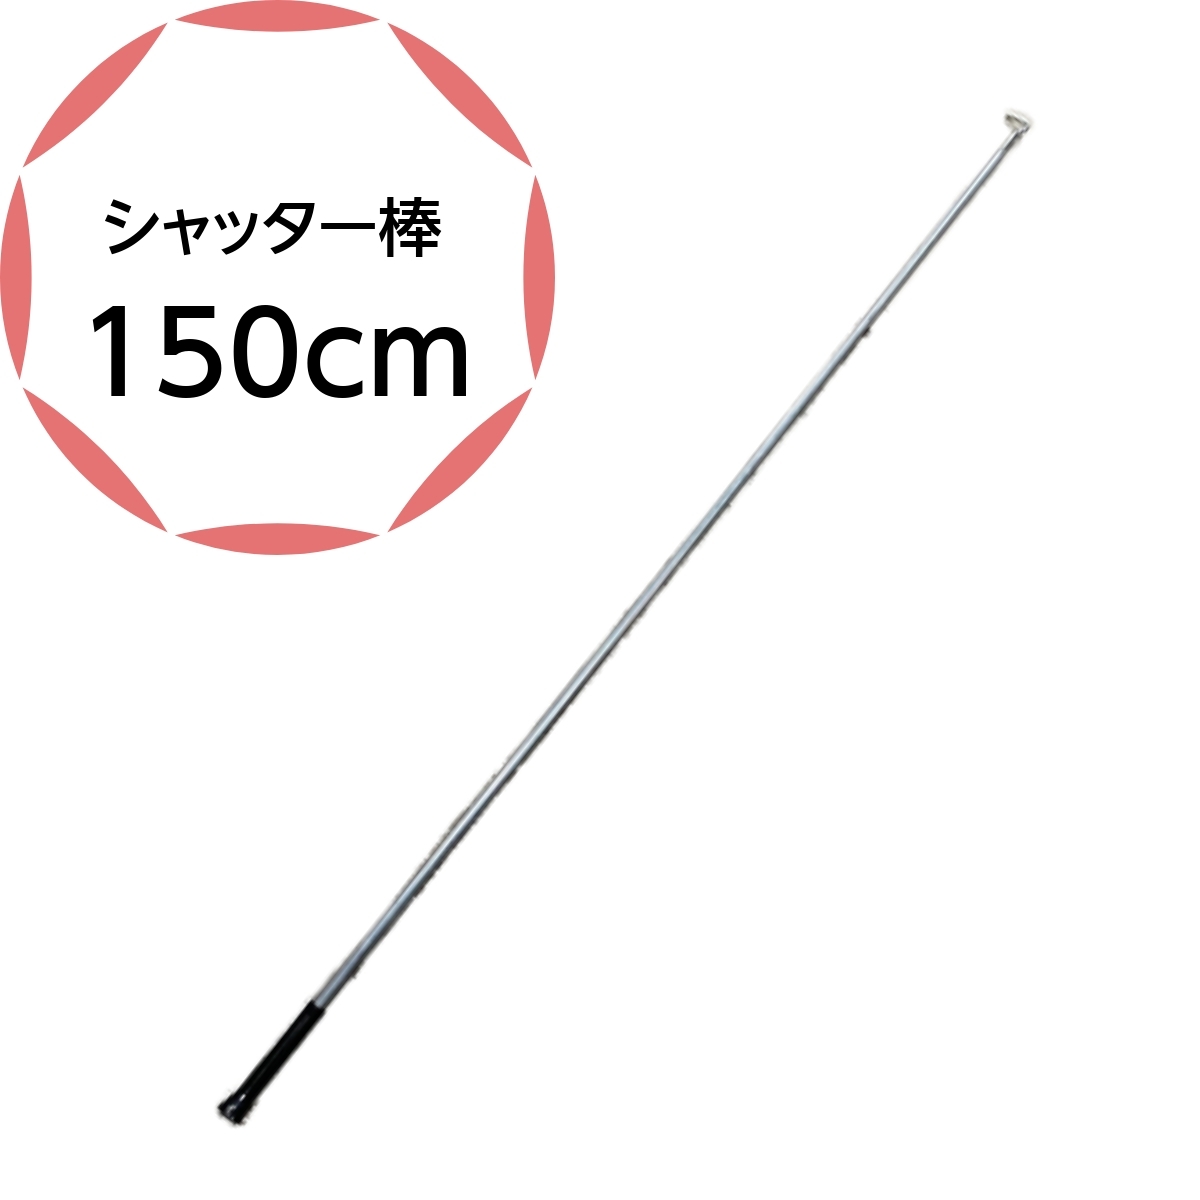 シャッター棒 日本の町工場の職人が手作りで作成 150cmのシャッター棒です 日本製 亜鉛メッキ スチールタイプ 手動シャッター 店舗 窓